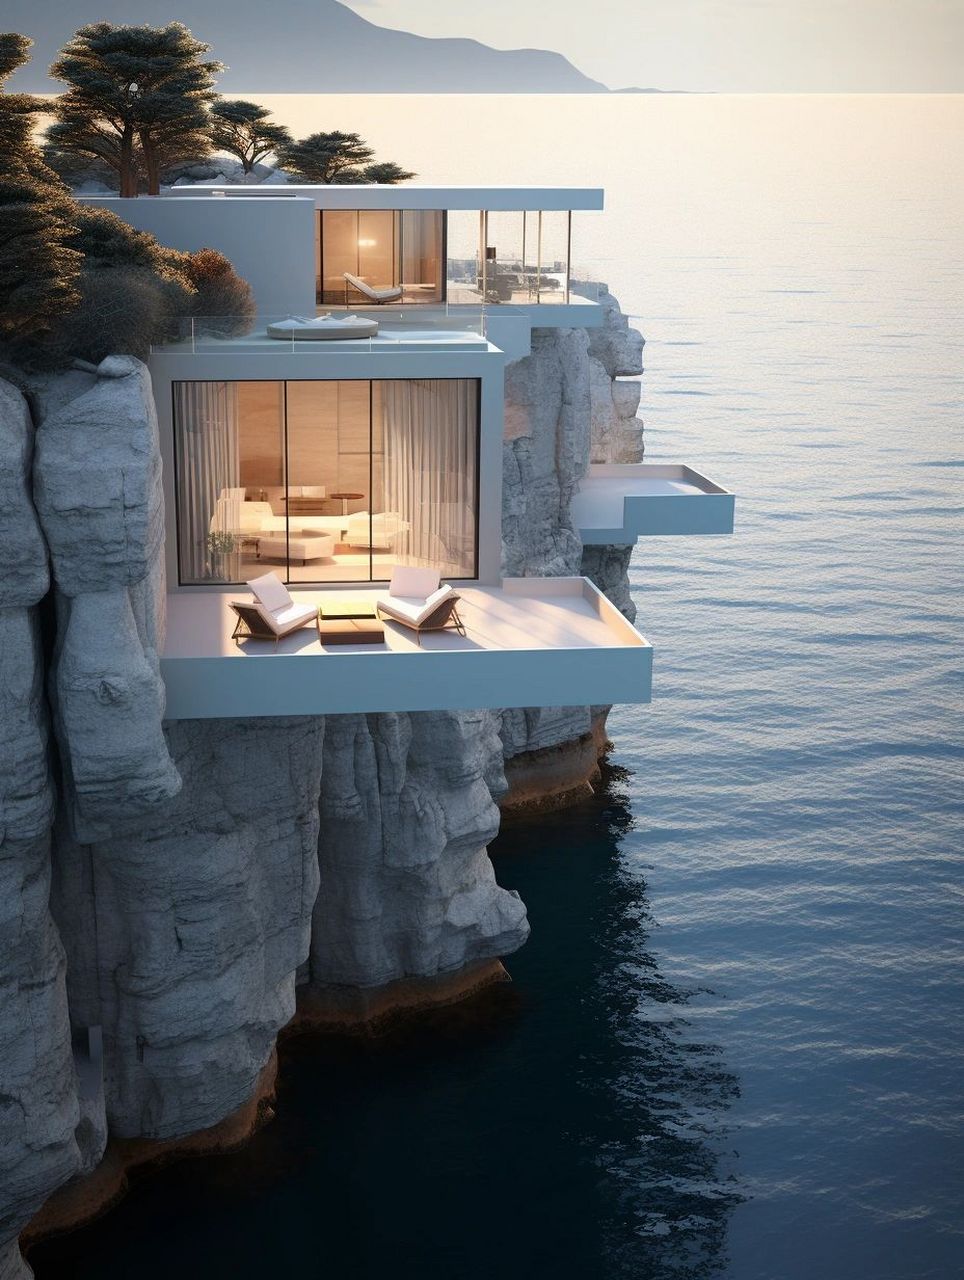 意大利悬崖酒店 意大利南部海岸线,阿尔玛菲海岸岛屿,悬崖大海上漂浮